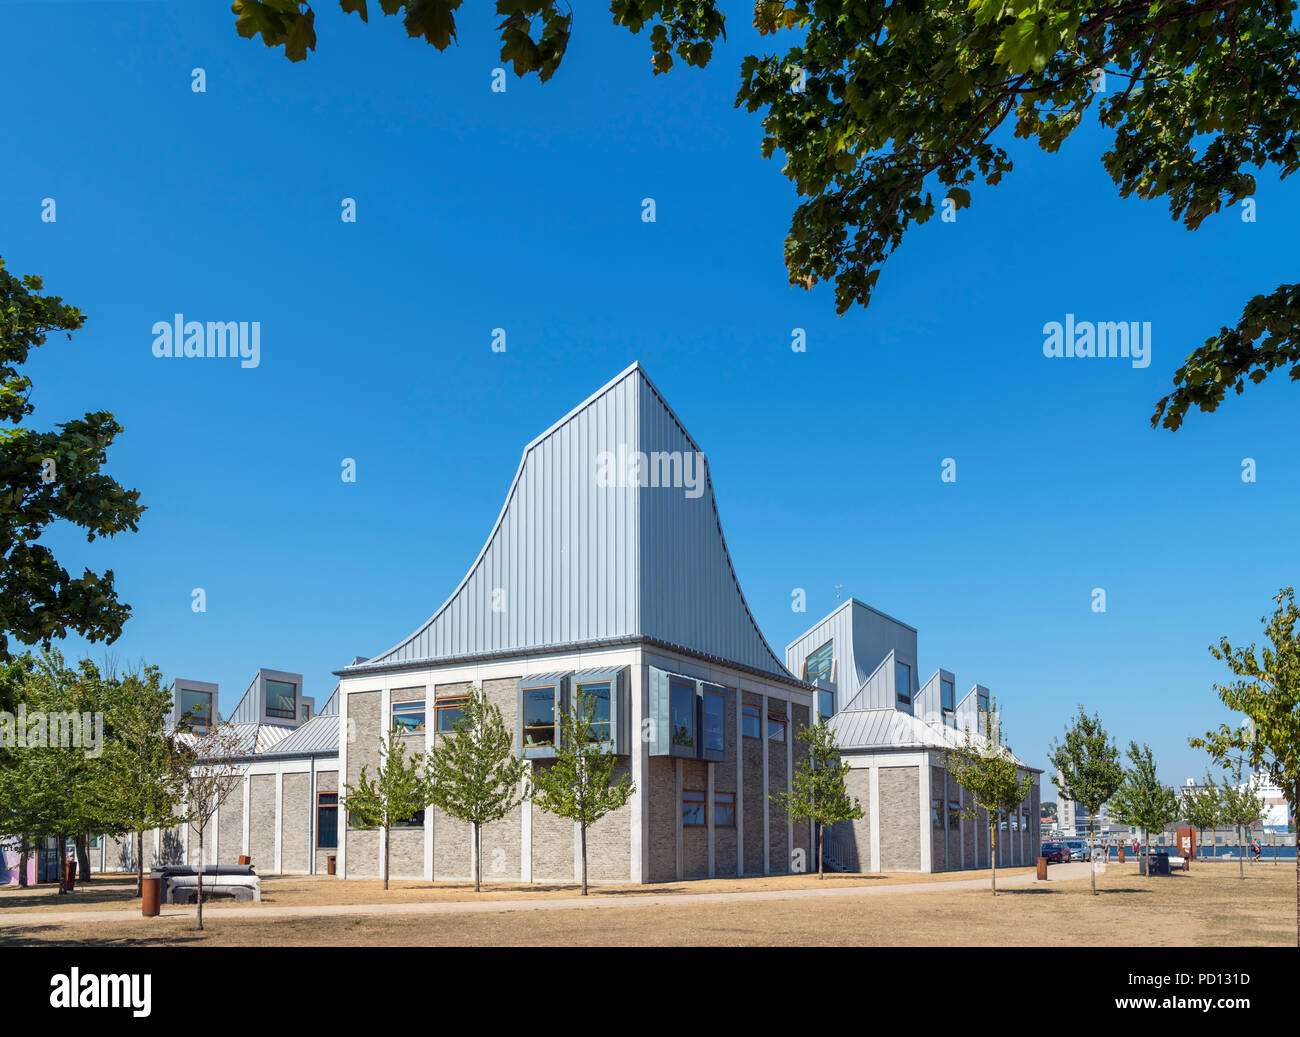 Il centro di Utzon, Aalborg, Danimarca. Il 2008 edificio è stato progettato dall'architetto danese Jørn Utzon, che notoriamente progettato la Opera House di Sydney. Foto Stock